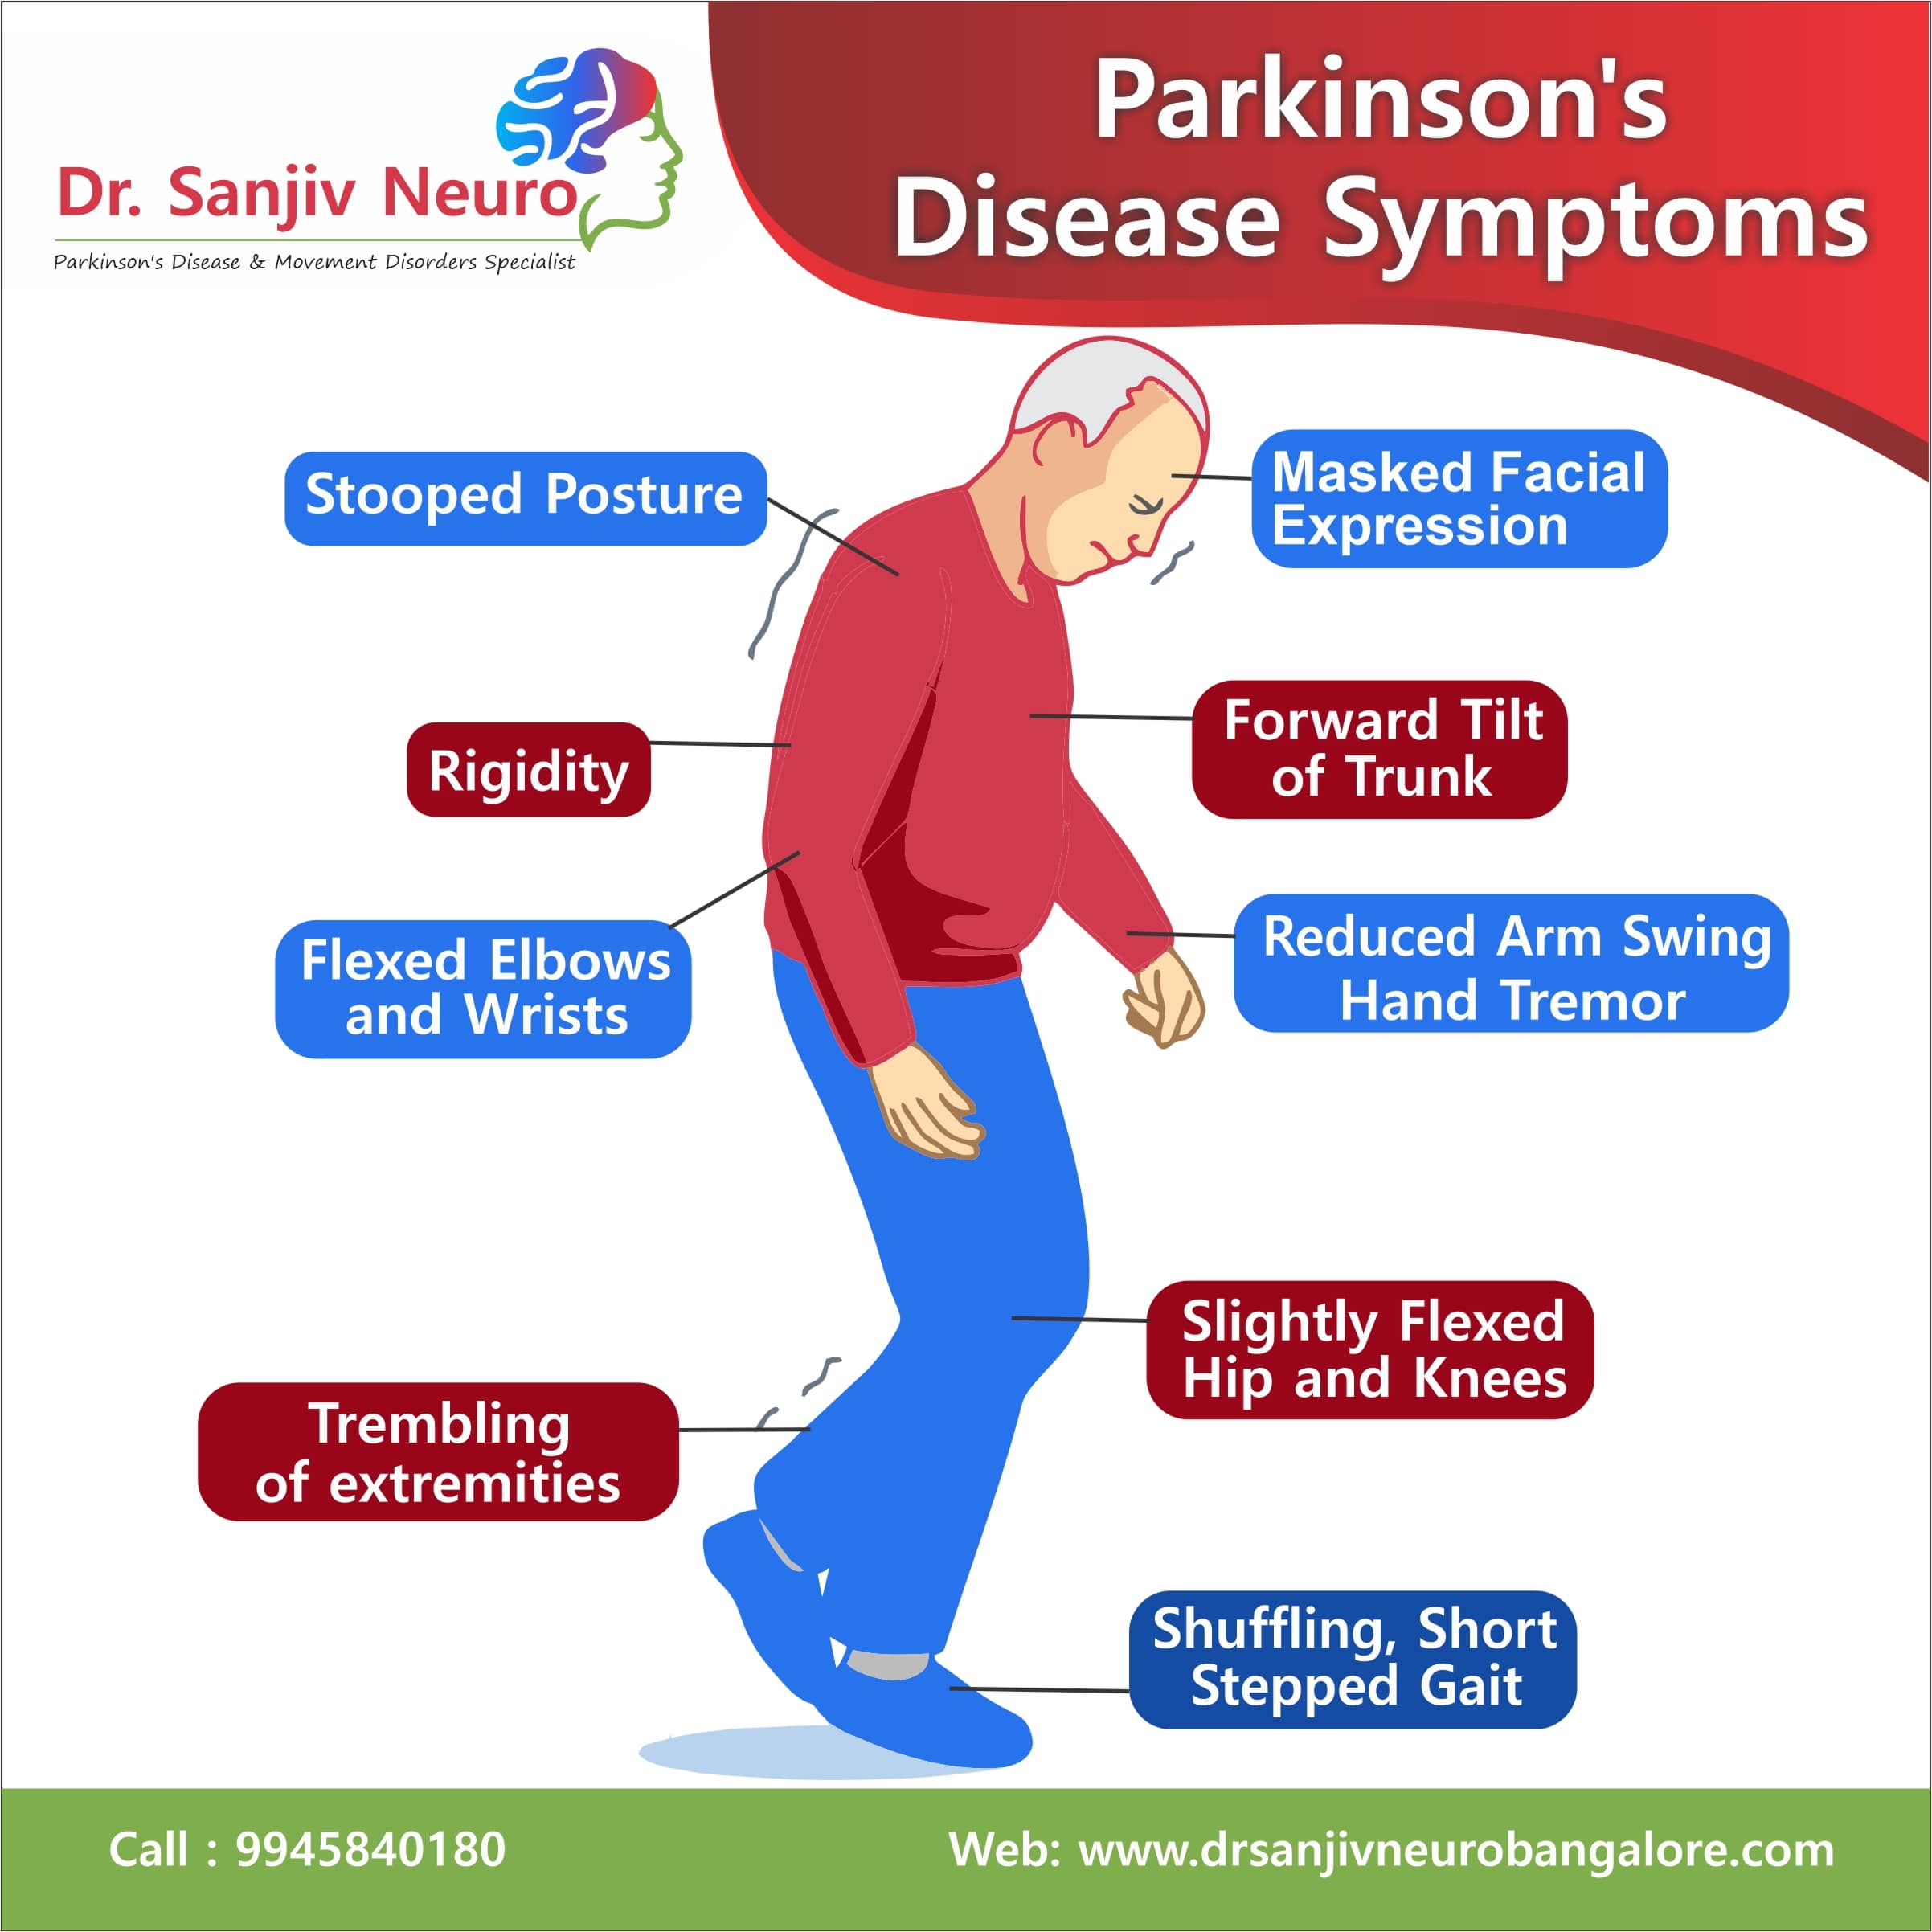 parkinson's disease symptoms